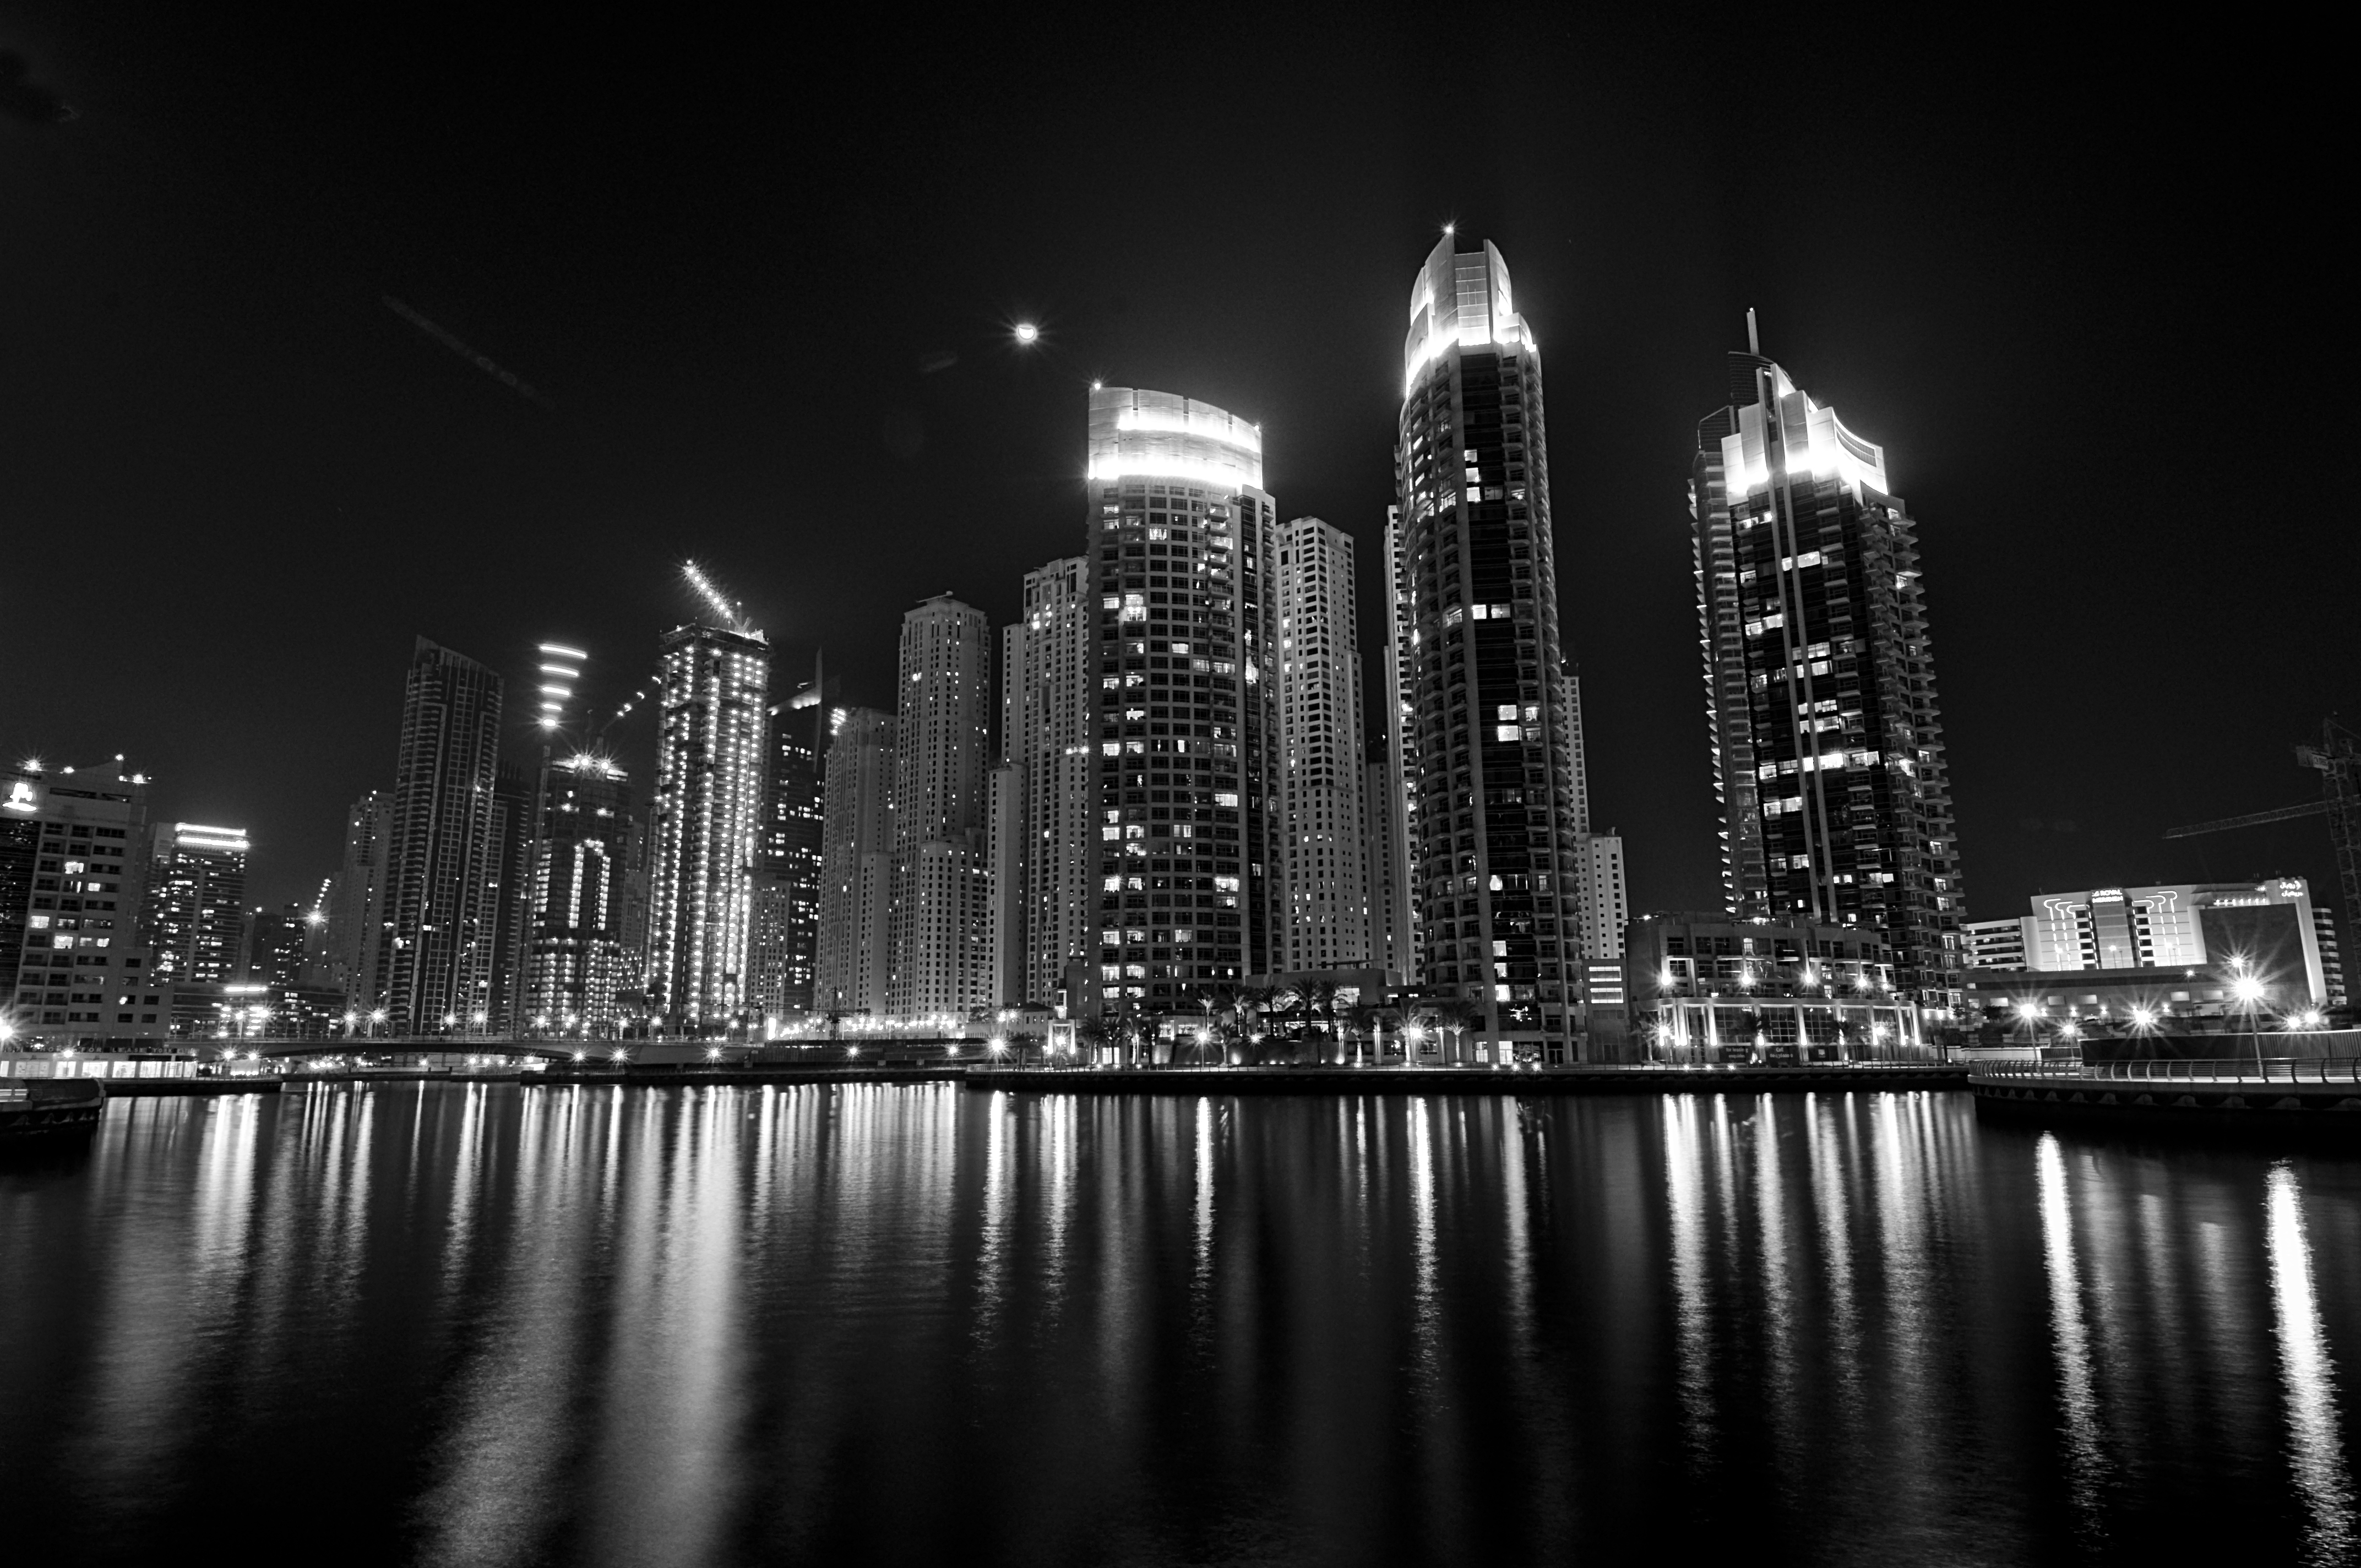 Dubai Marina B / W by CSamiano on DeviantArt